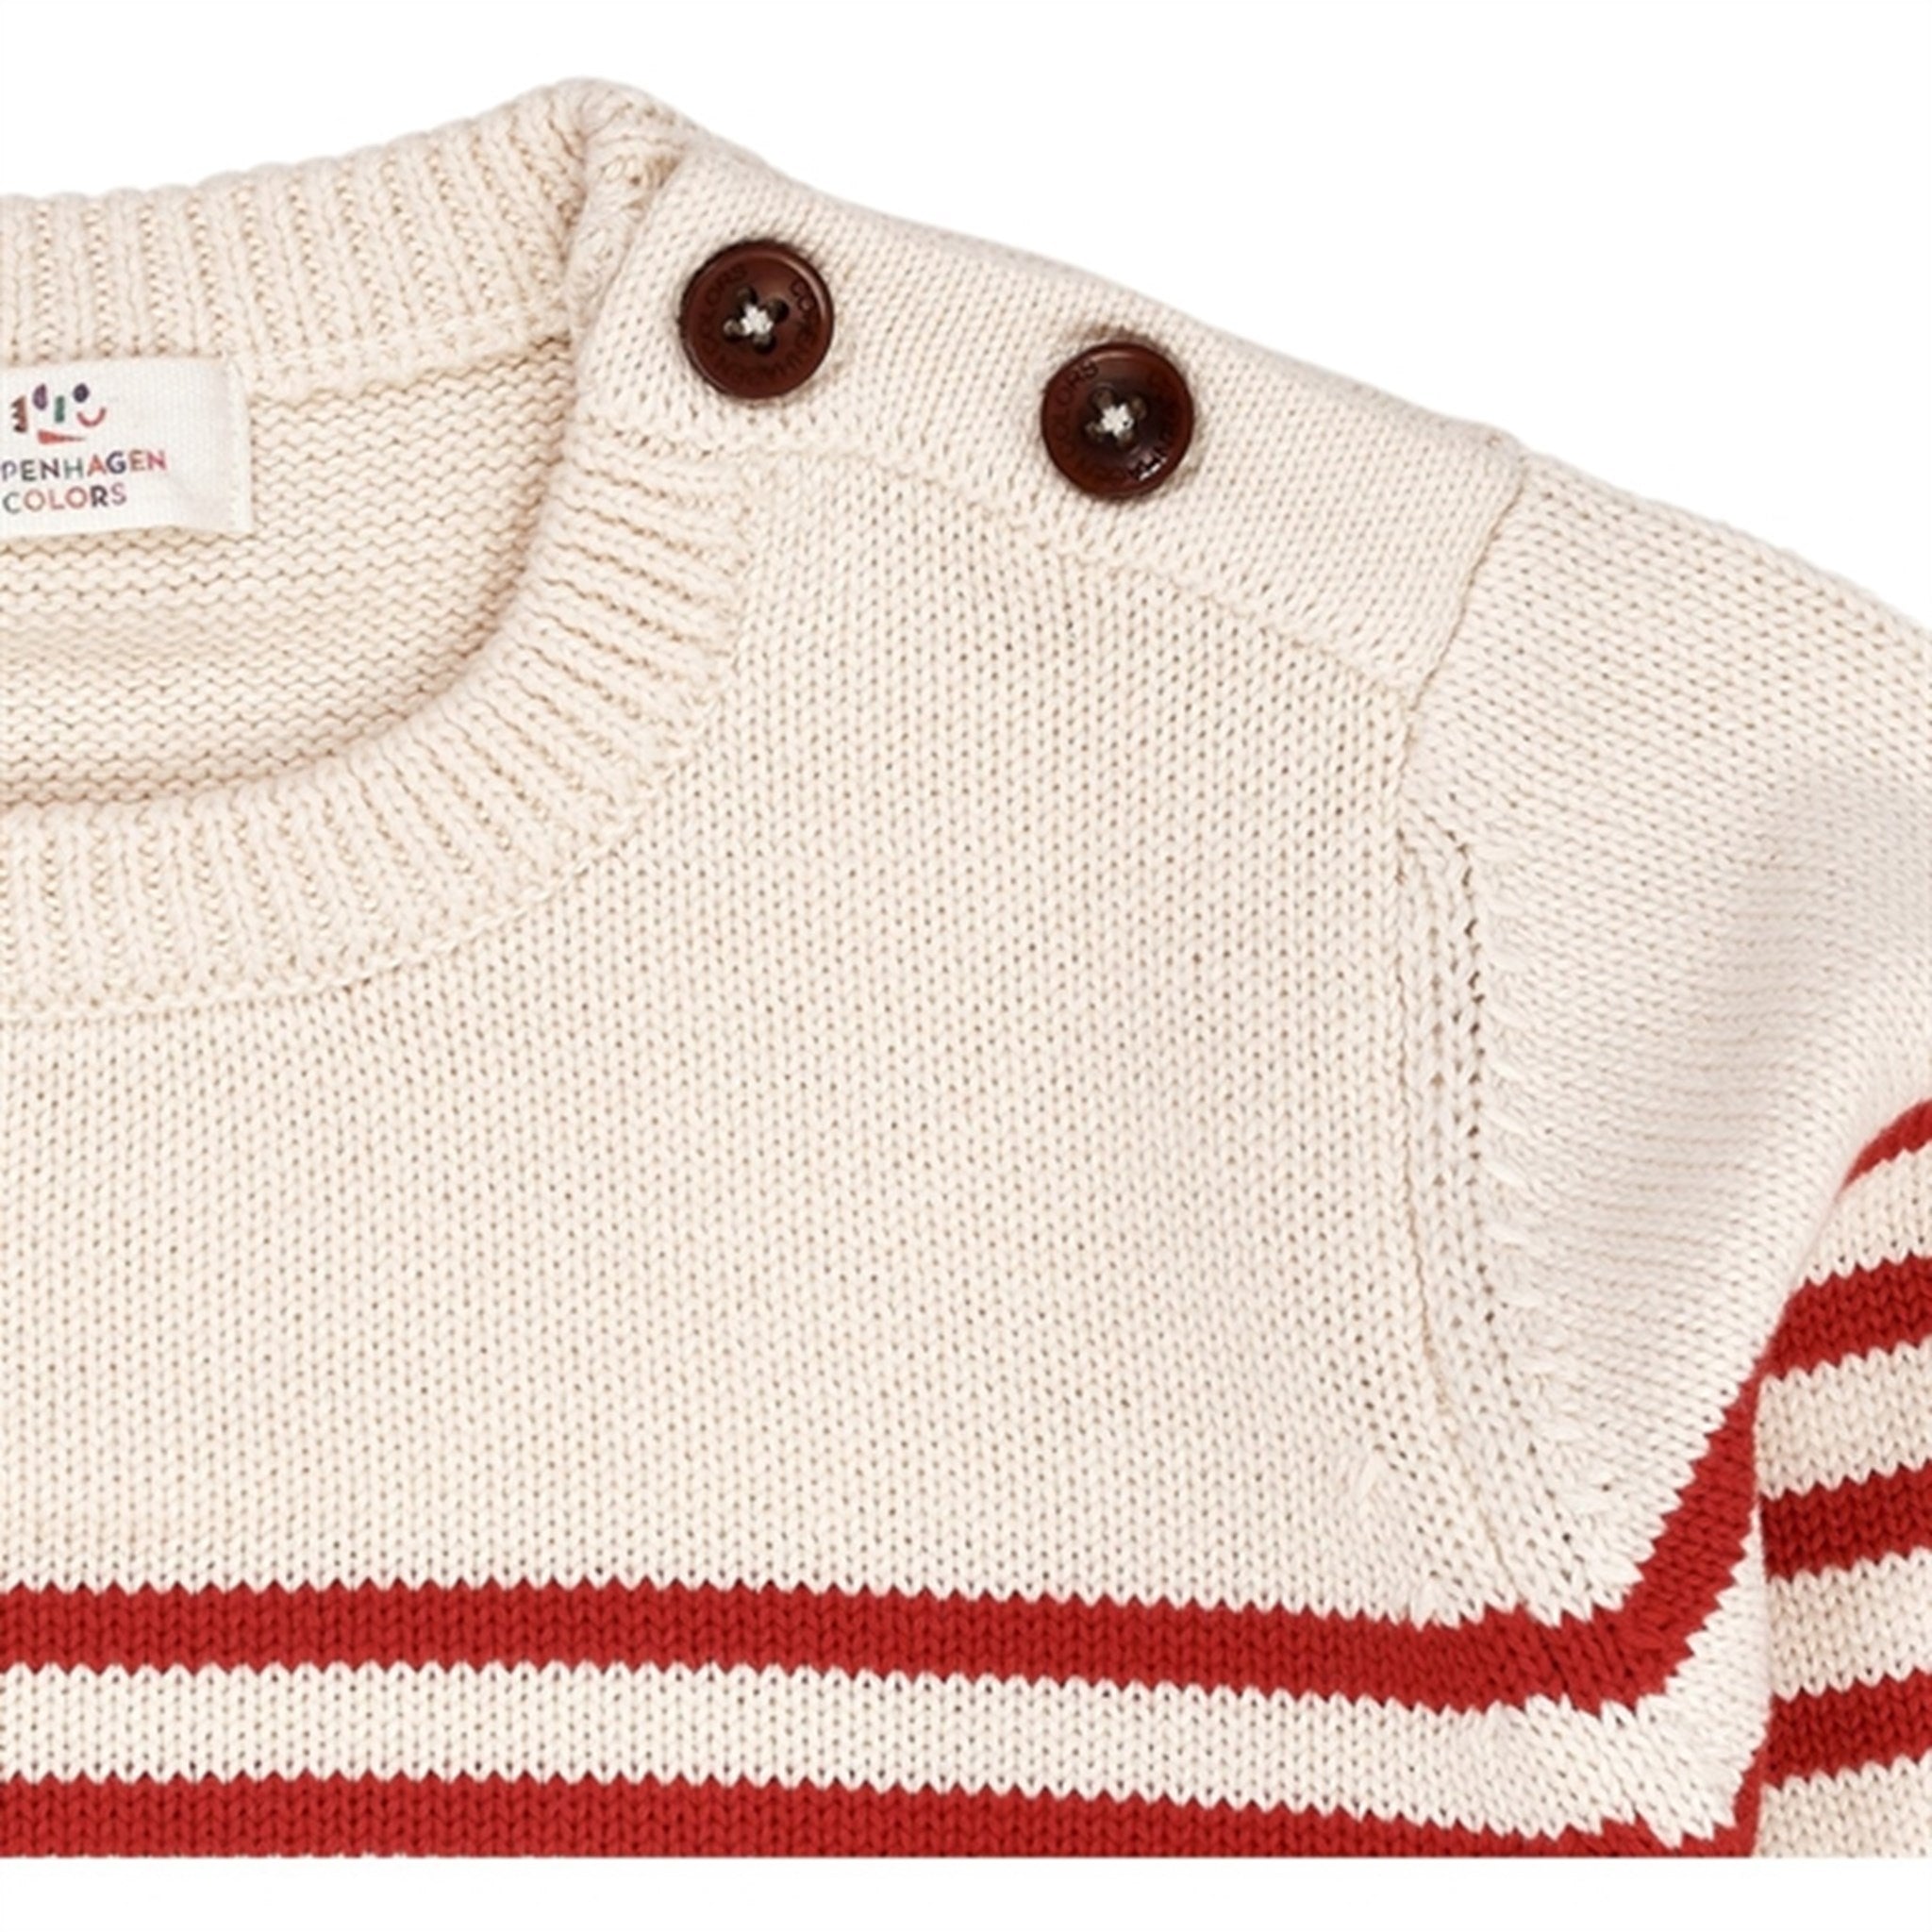 Copenhagen Colors Cream/Red Combi Strikk Sailor Sweater Stripe 7